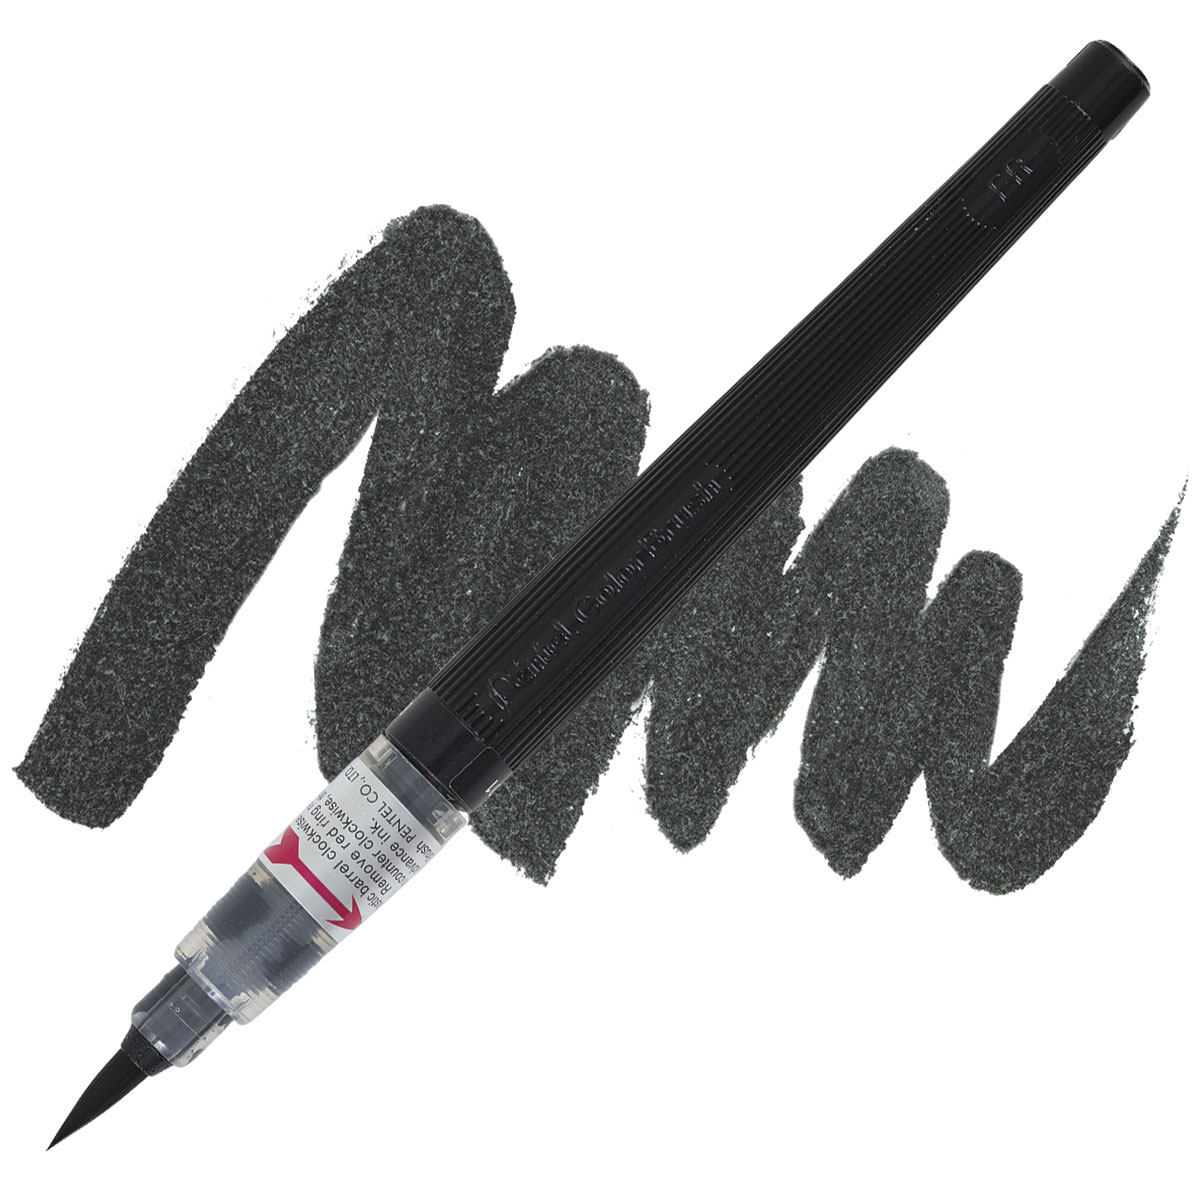 Pentel Arts Sign Brush Pen, Black - The Art Store/Commercial Art Supply